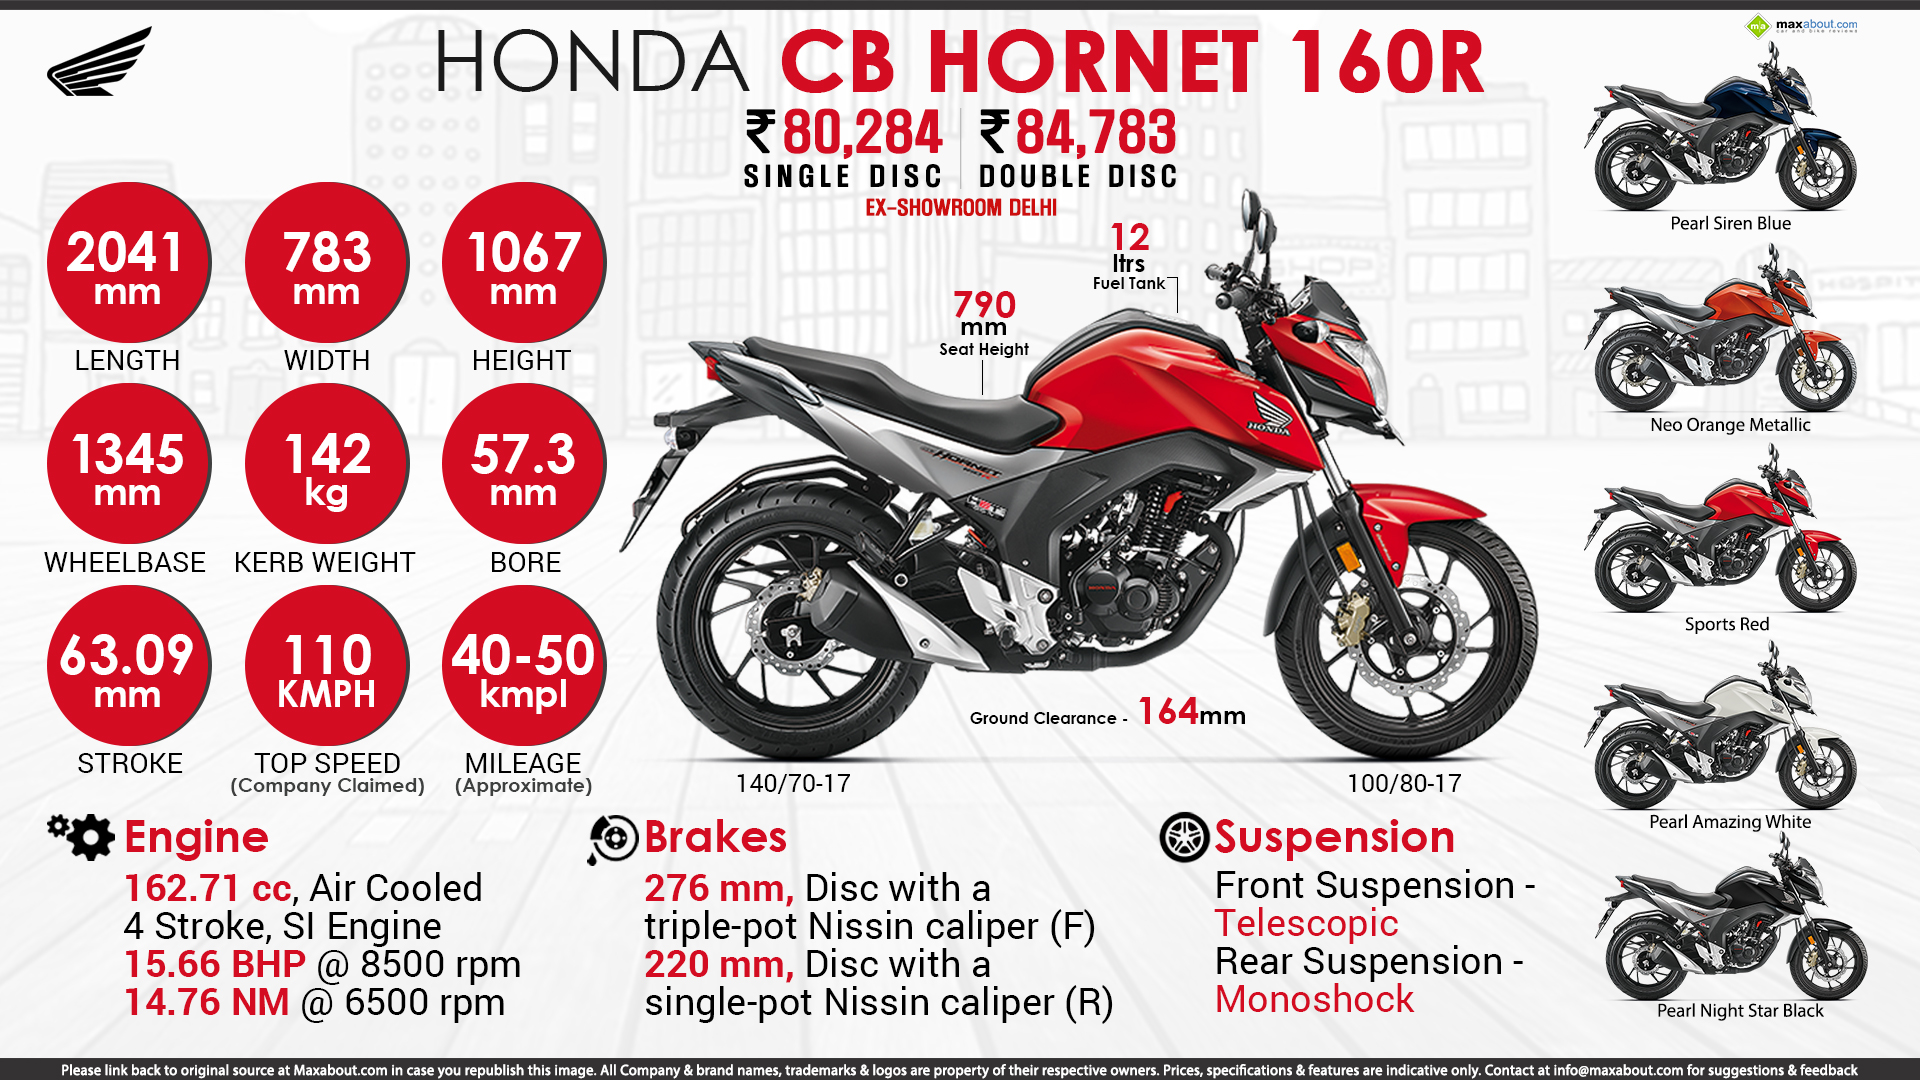 Honda CB Hornet 160R Hide Nothing